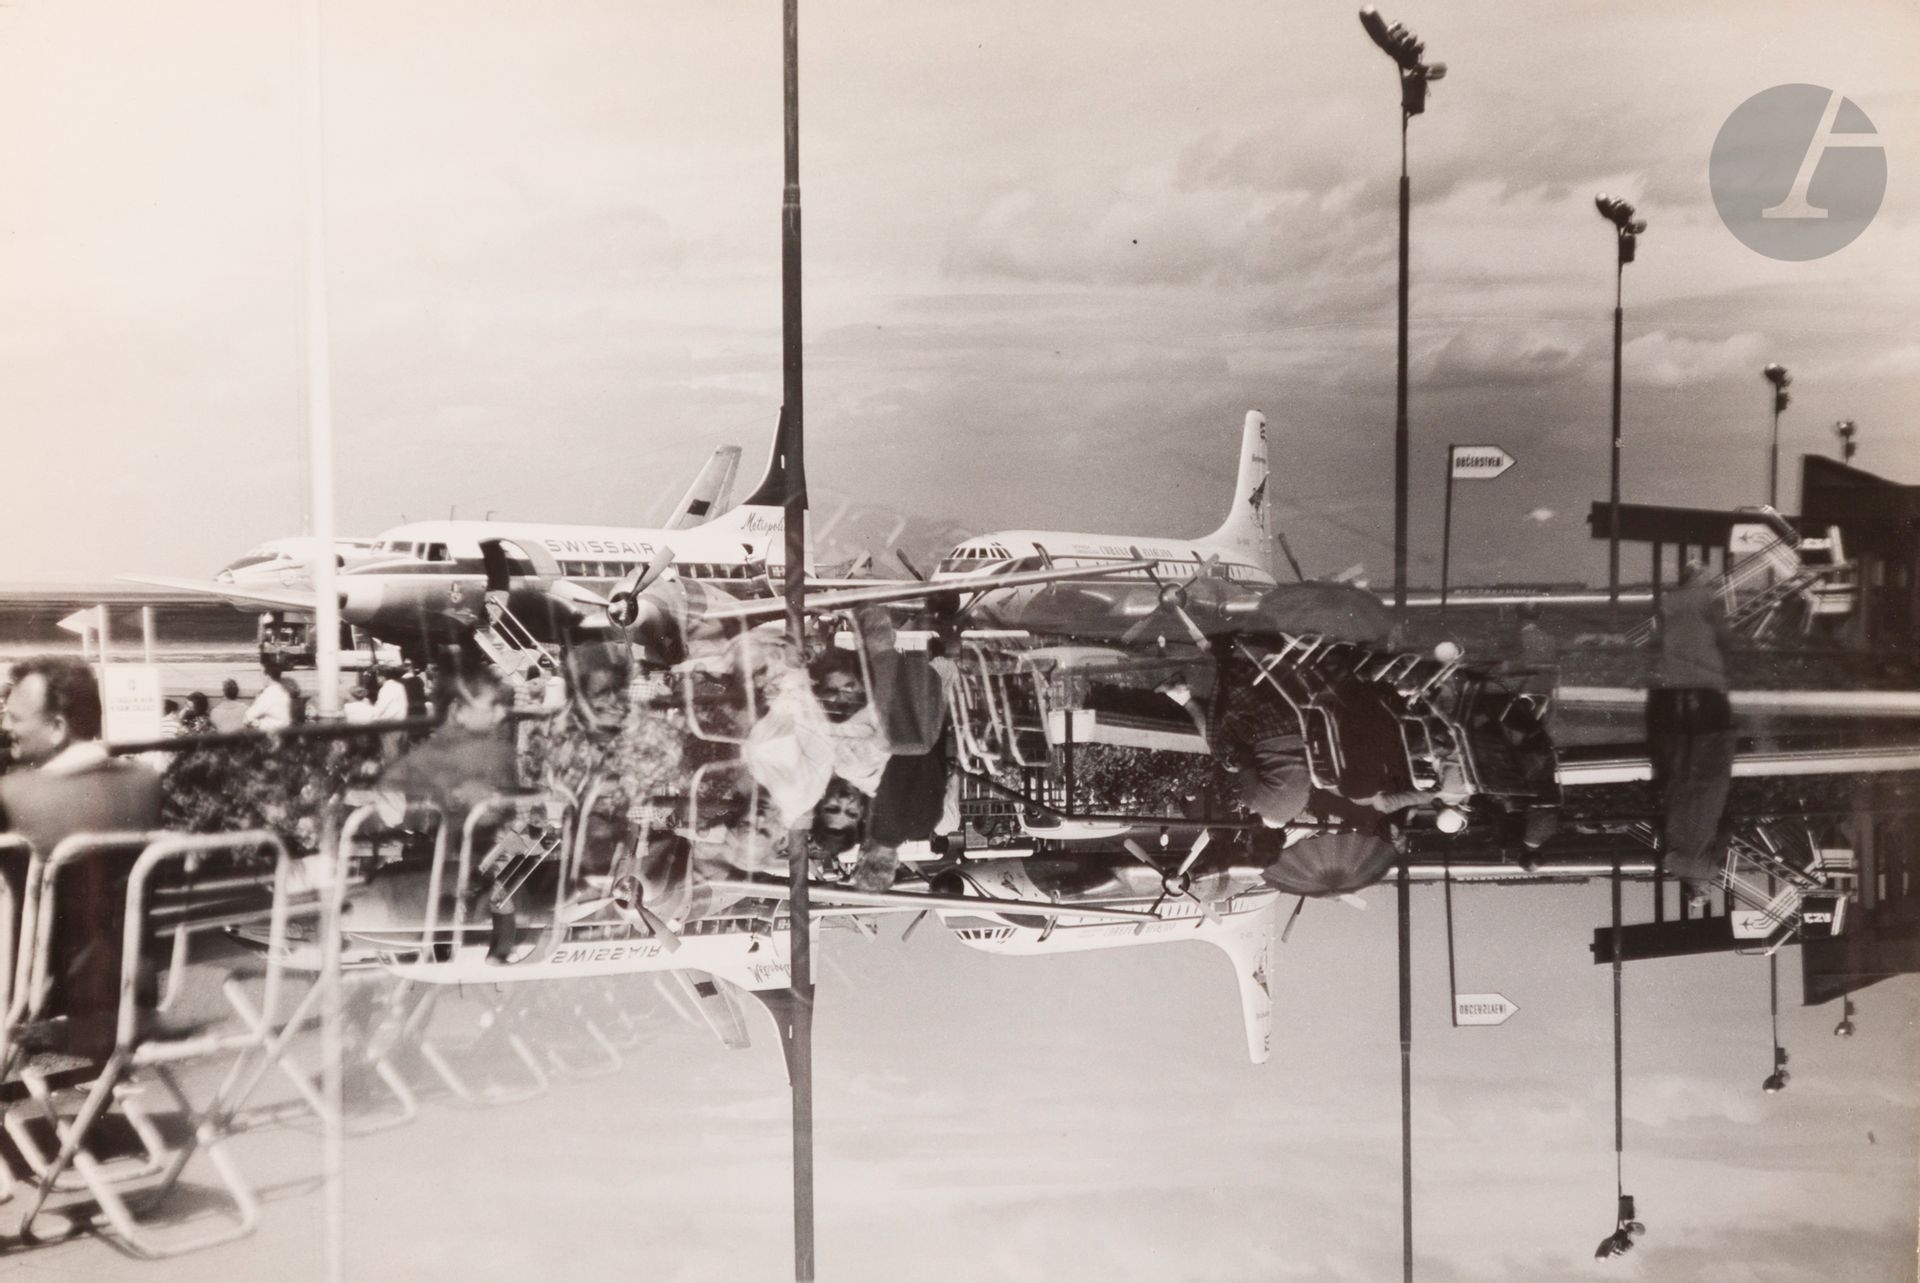 Letiste [airport] by Jaroslav Rössler, 1962